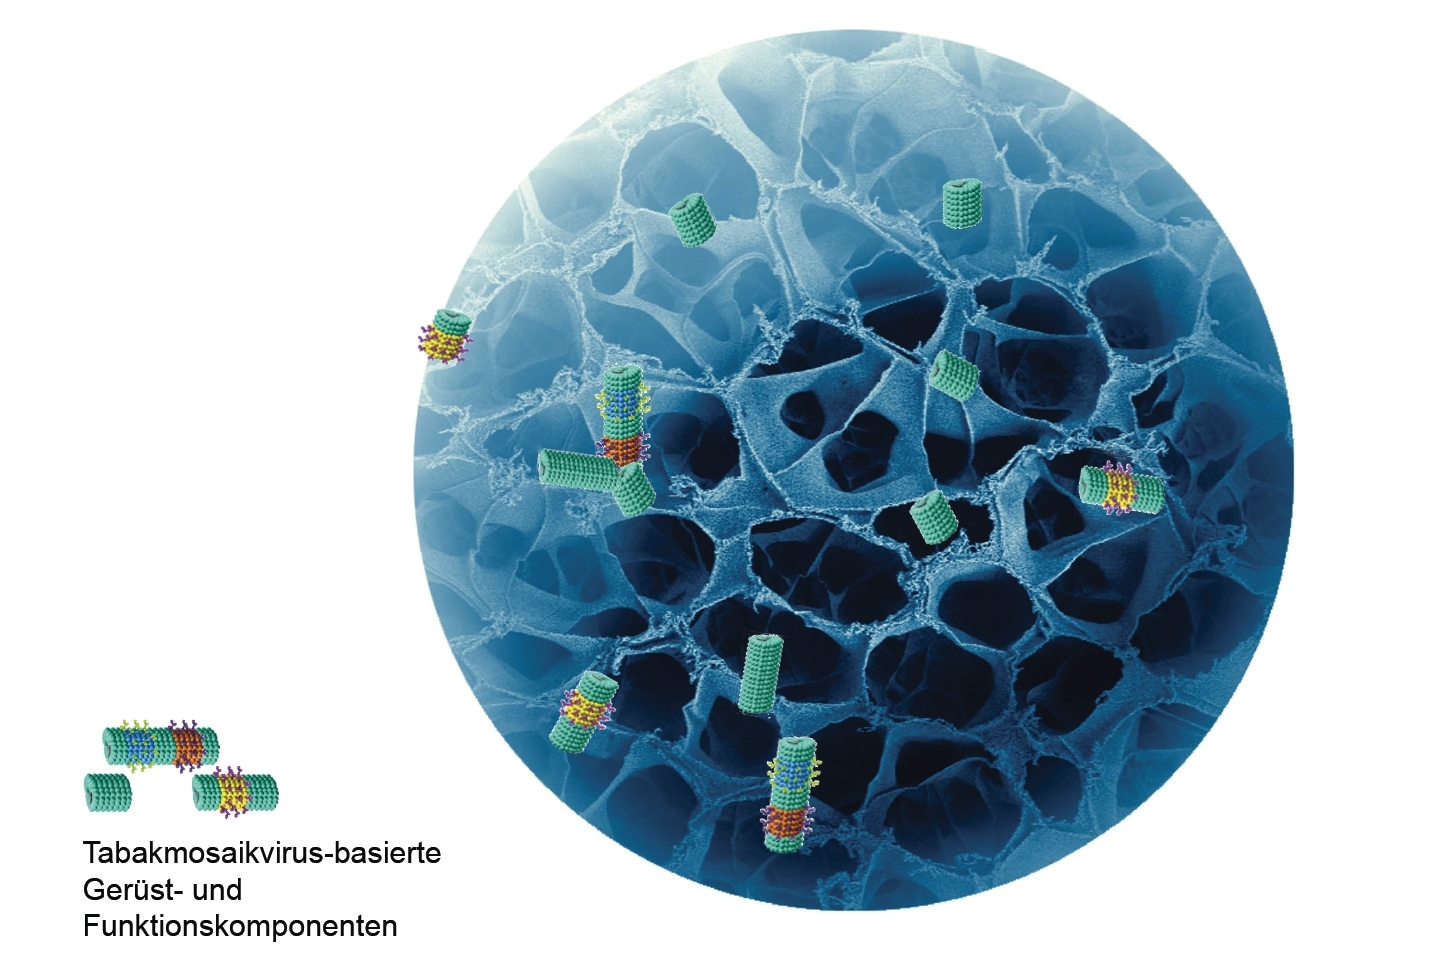 Schematische Darstellung eines Hydrogels mit Tabakmosaikvirus-basierten Gerüst- und Funktionskomponenten.